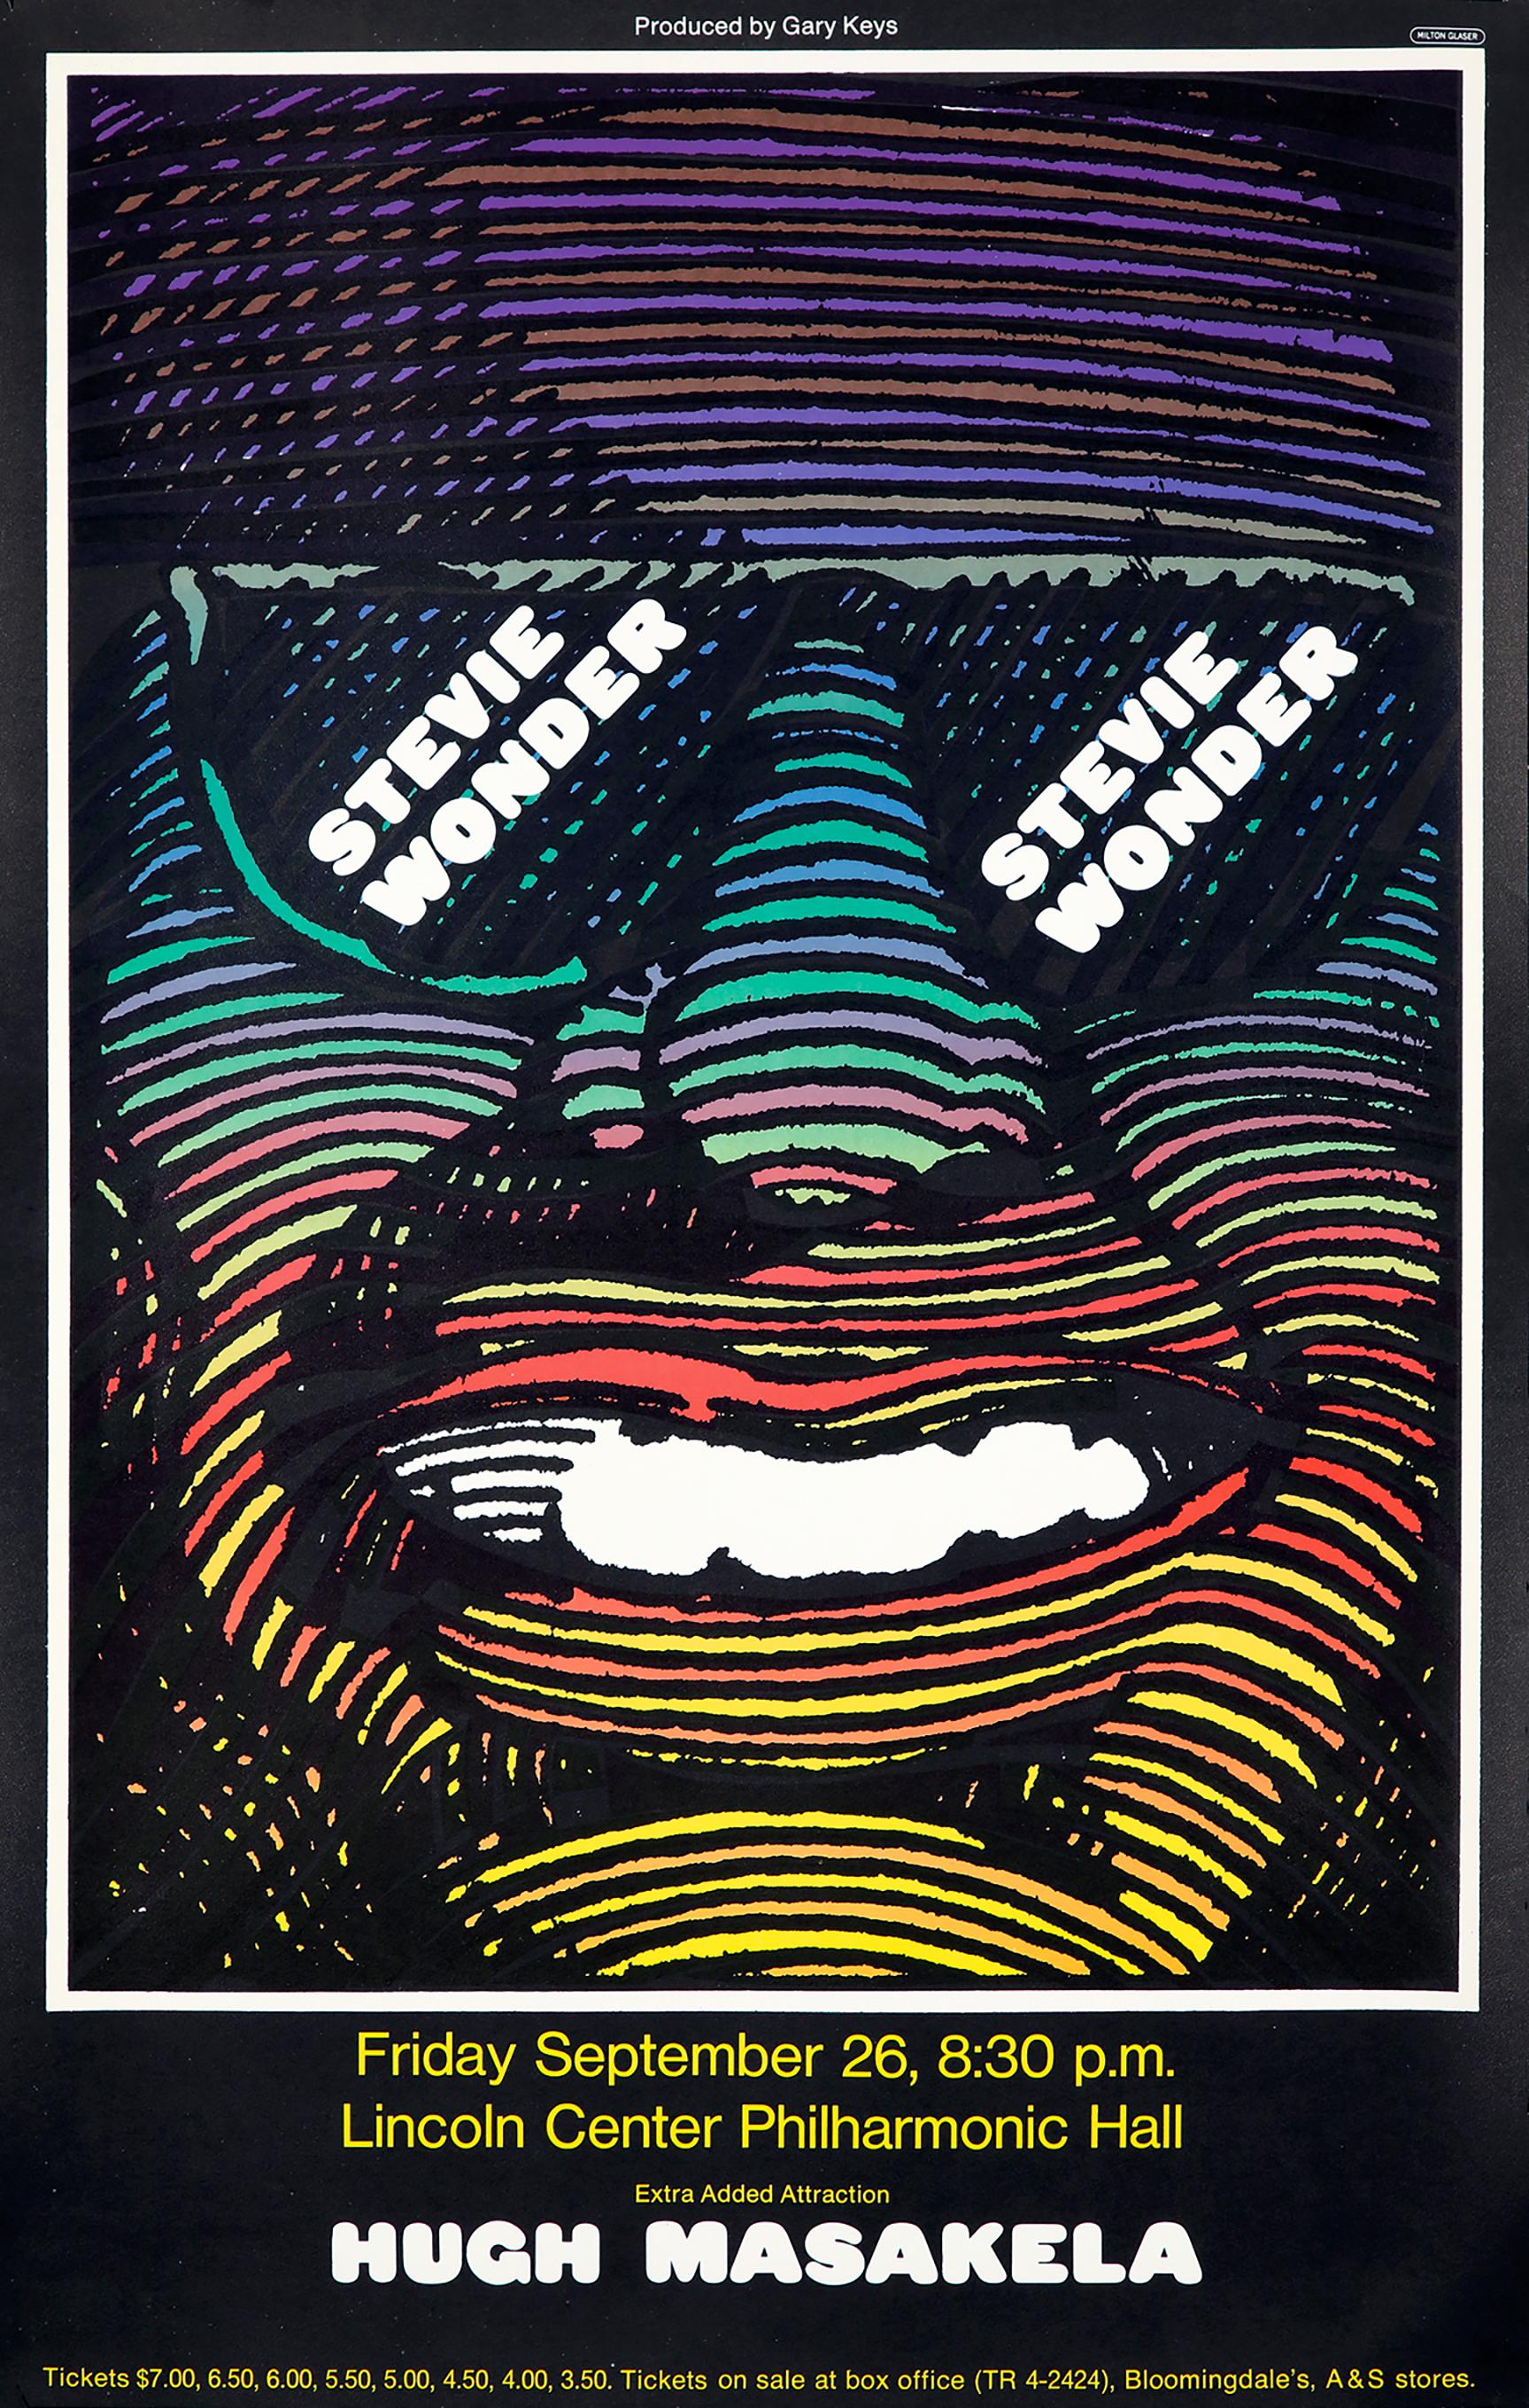 Affiche de Milton Glaser pour Stevie Wonder au Philharmonic Hall de New York, 1968 : 
Affiche originale de 1968 du concert Stevie Wonder de Milton Glaser, conçue par le légendaire designer pour un concert de Stevie Wonder et Hughes Masakela au